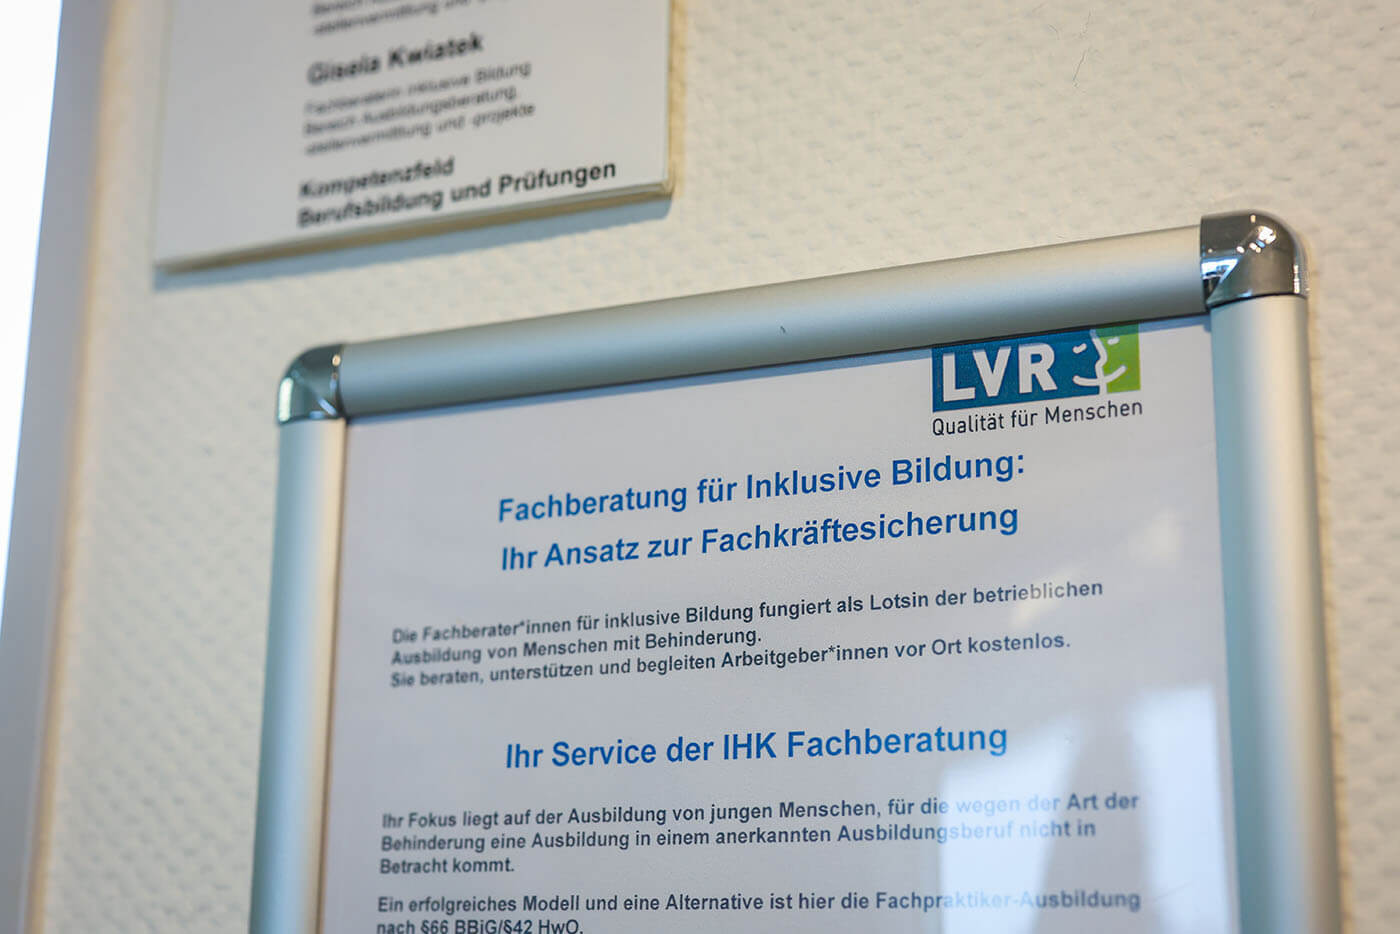 Das Foto zeigt ein Schild mit dem Logo des LVR und einer Erläuterung zur Fachberatung für inklusive Bildung.